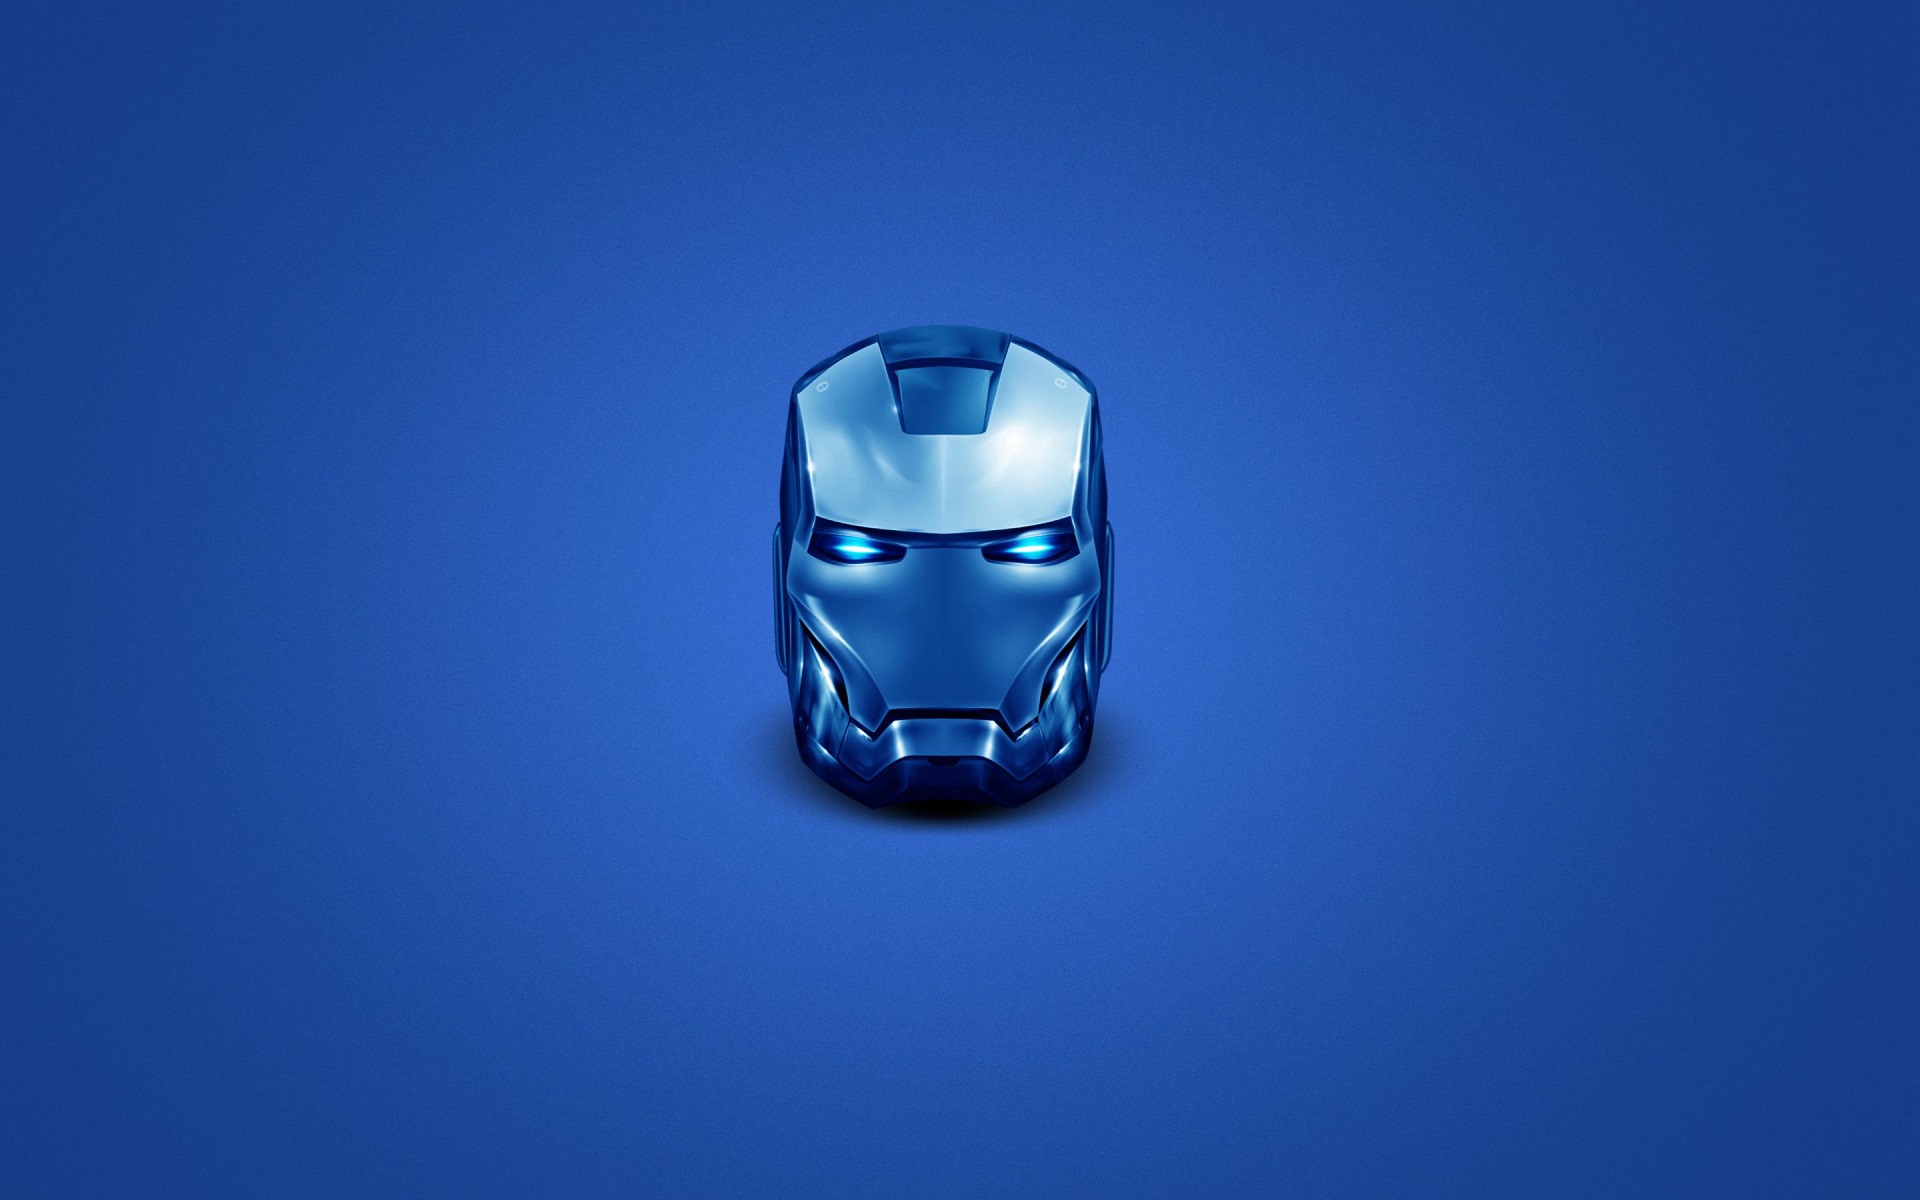 General 1920x1200 Iron Man head helmet superhero blue simple background minimalism Marvel Comics Marvel Cinematic Universe